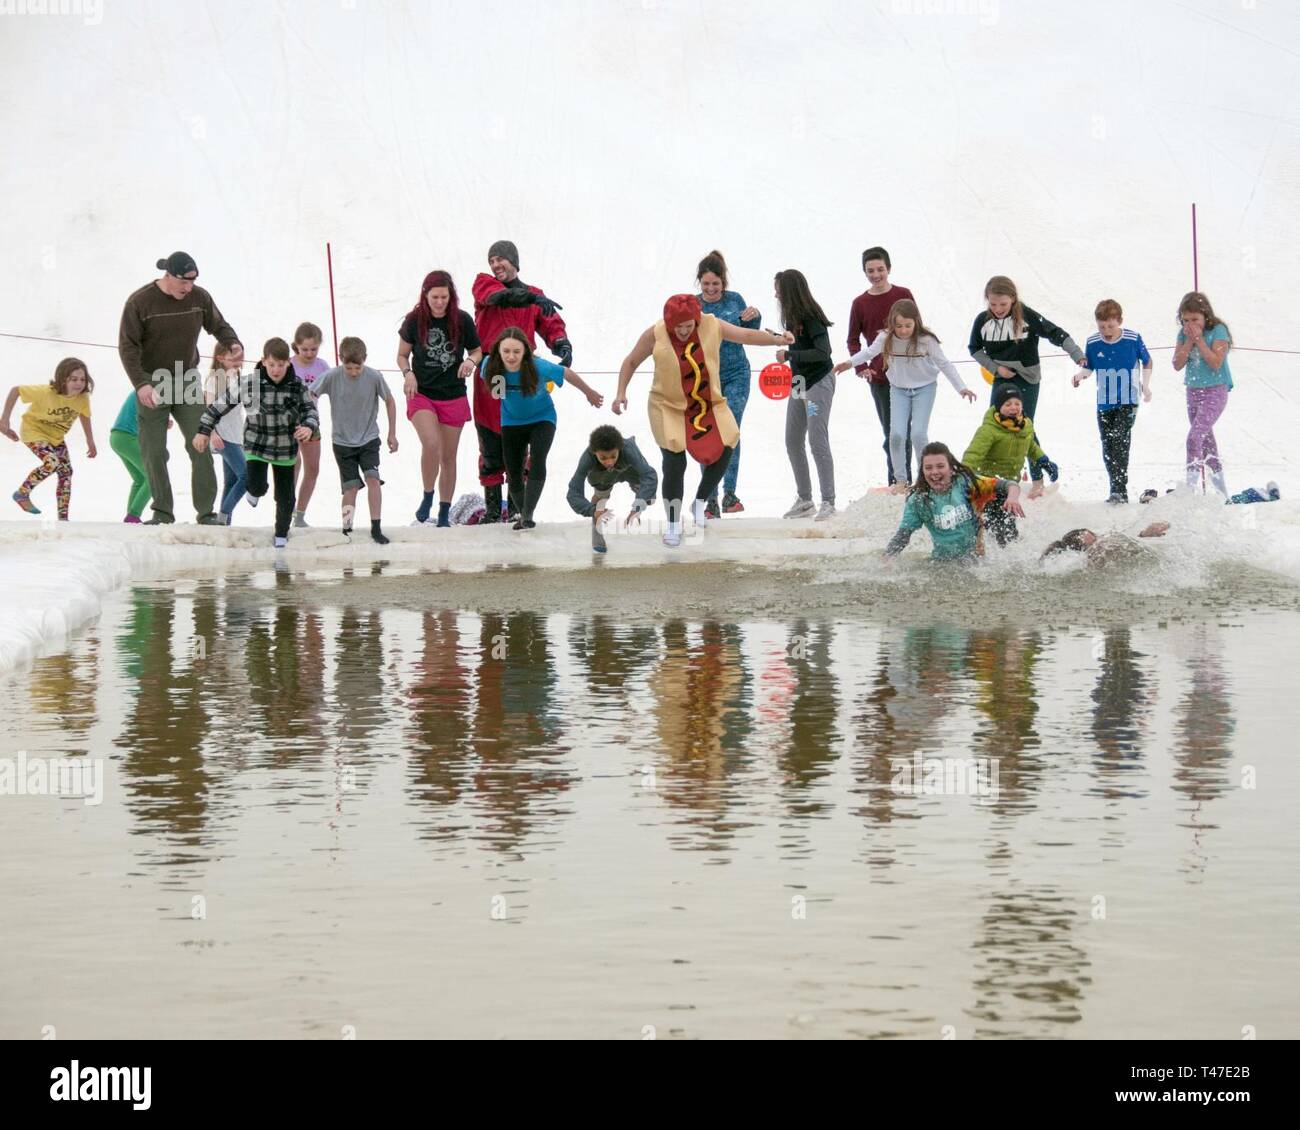 El Fort Wainwright Birch Hill Área de Ski y Snowboard acogió el 2019 March Madness Festival de Primavera en marzo 16 y 17 donde los soldados, civiles y de familia tuvieron la oportunidad de competir en diversos eventos de esquí y snowboard, como el estanque Skip donde cada participante intentó cruzar un estanque en la base de la colina de esquí. Tras las competiciones, aquellos que estén dispuestos a desafiar el agua helada tuvo una oportunidad de saltar, correr o nadar en la laguna como parte del ski hill anuales Polar Plunge. Foto de stock